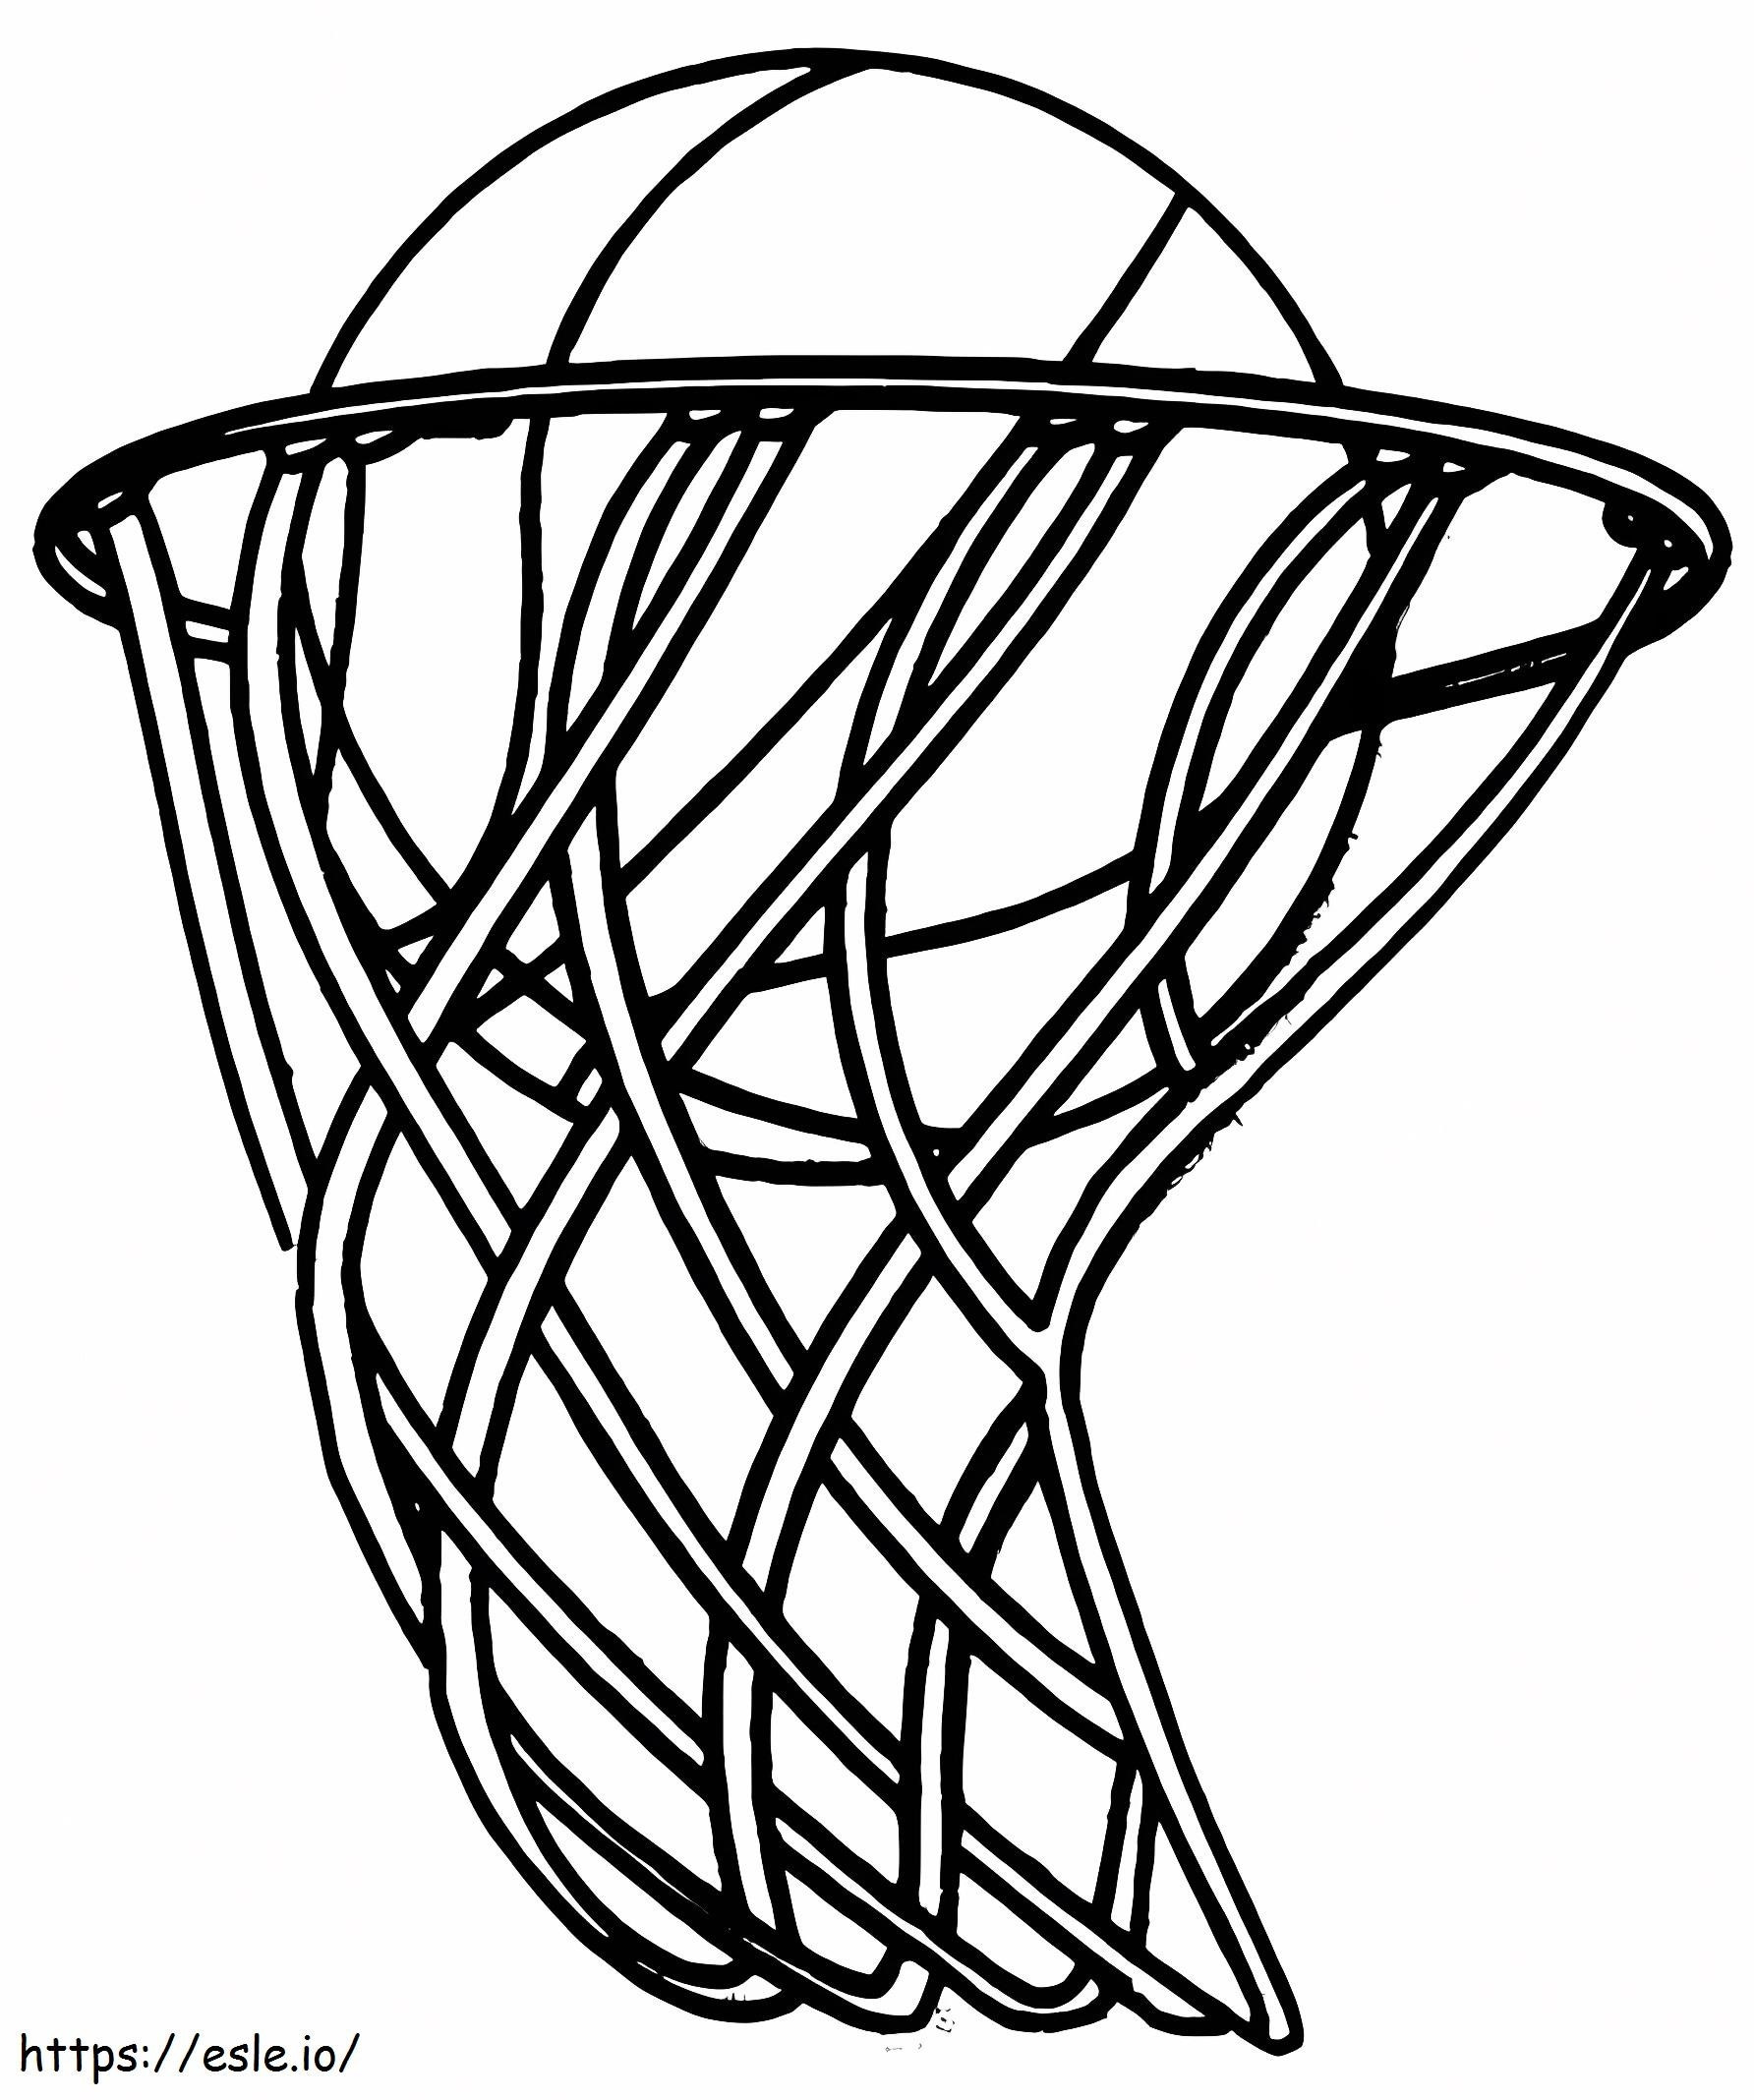 Coloriage Basket-ball de base 2 à imprimer dessin